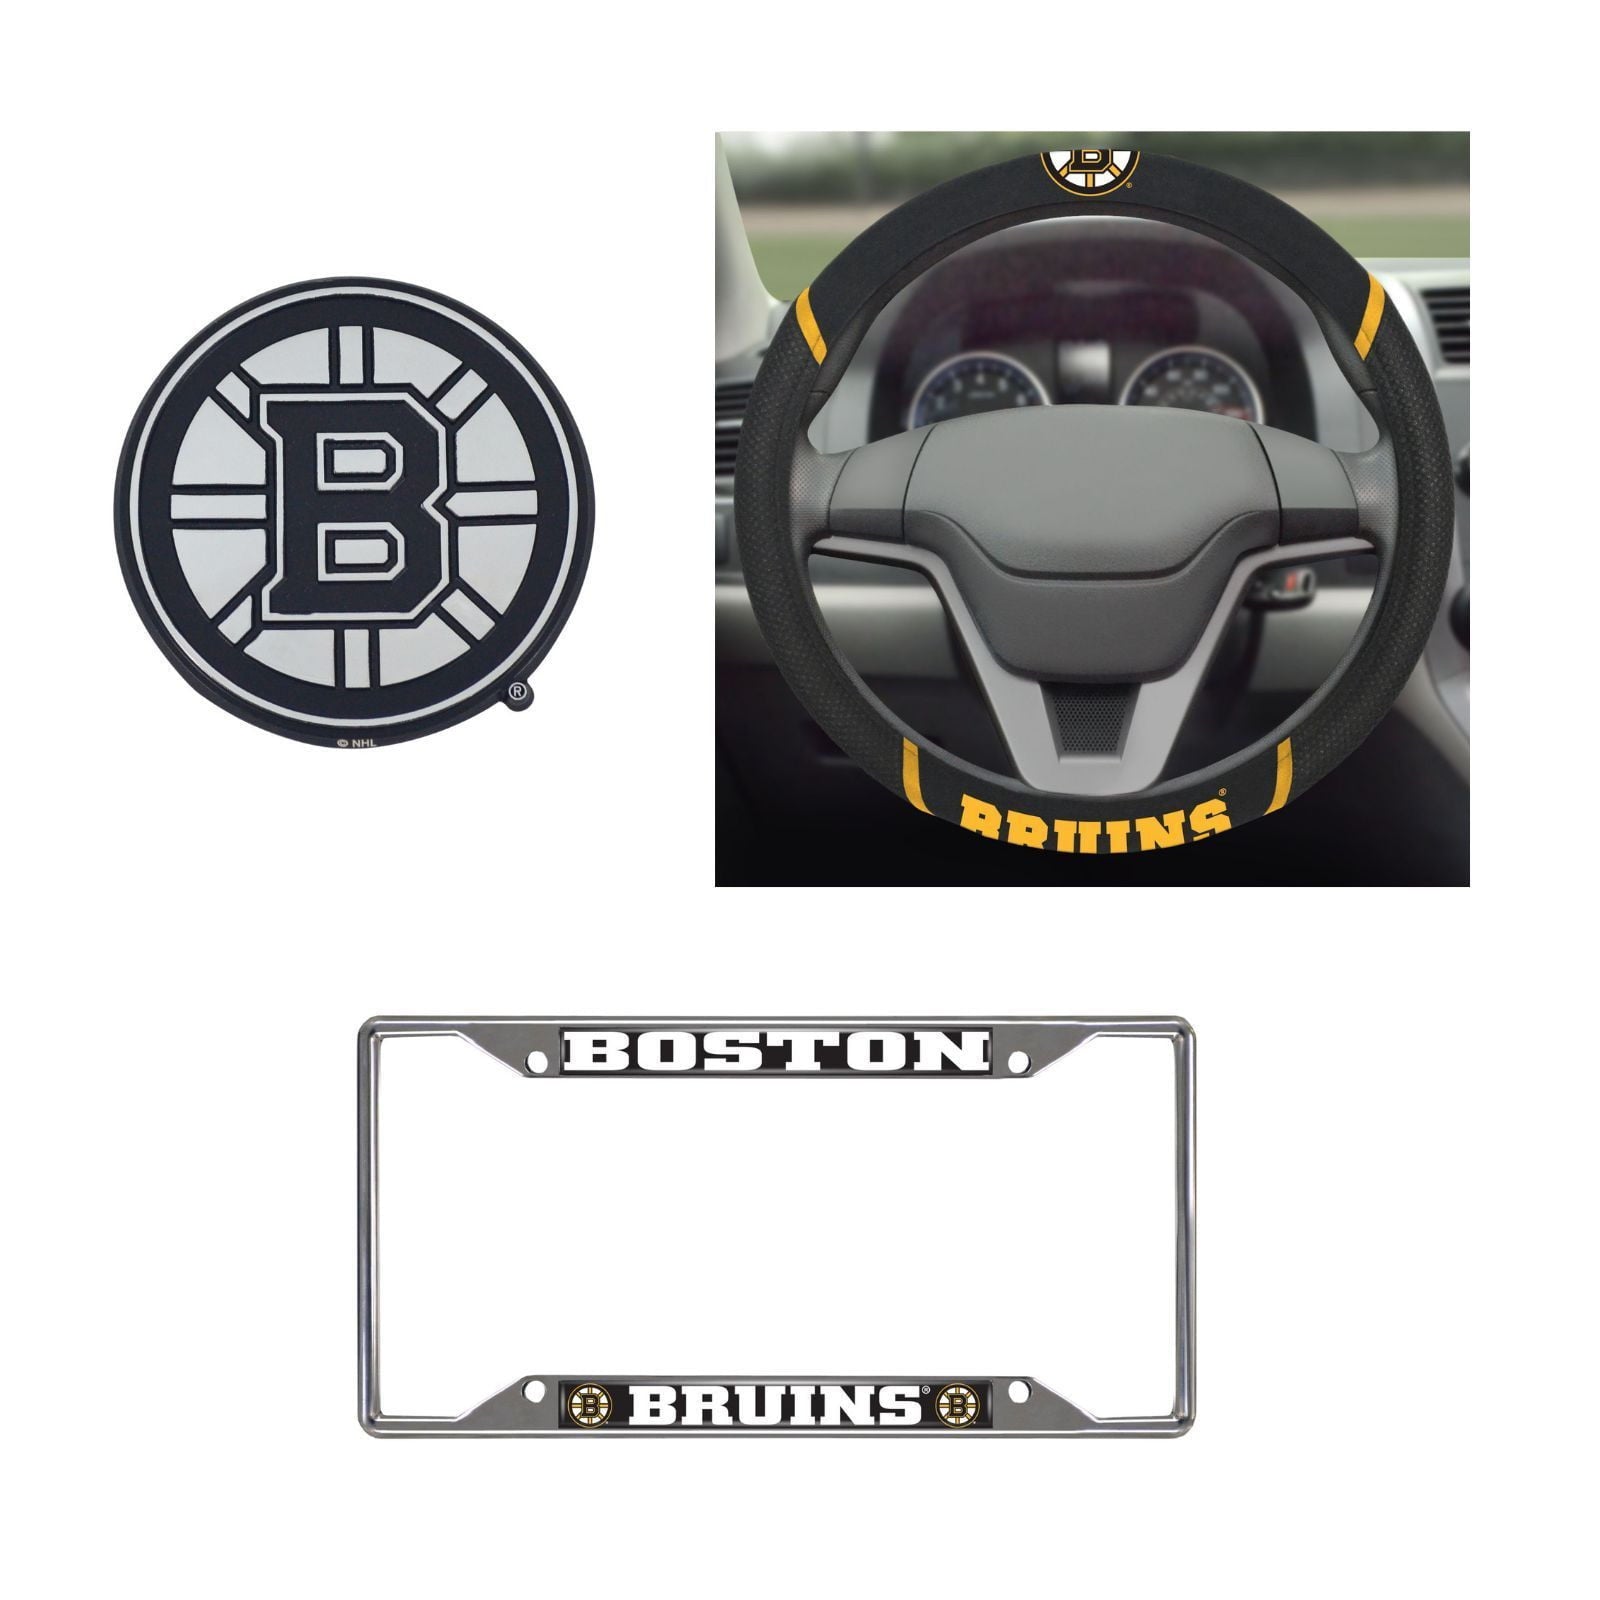 Boston Bruins Tide Steering Wheel Cover, License Plate Frame, 3D Chrome Emblem